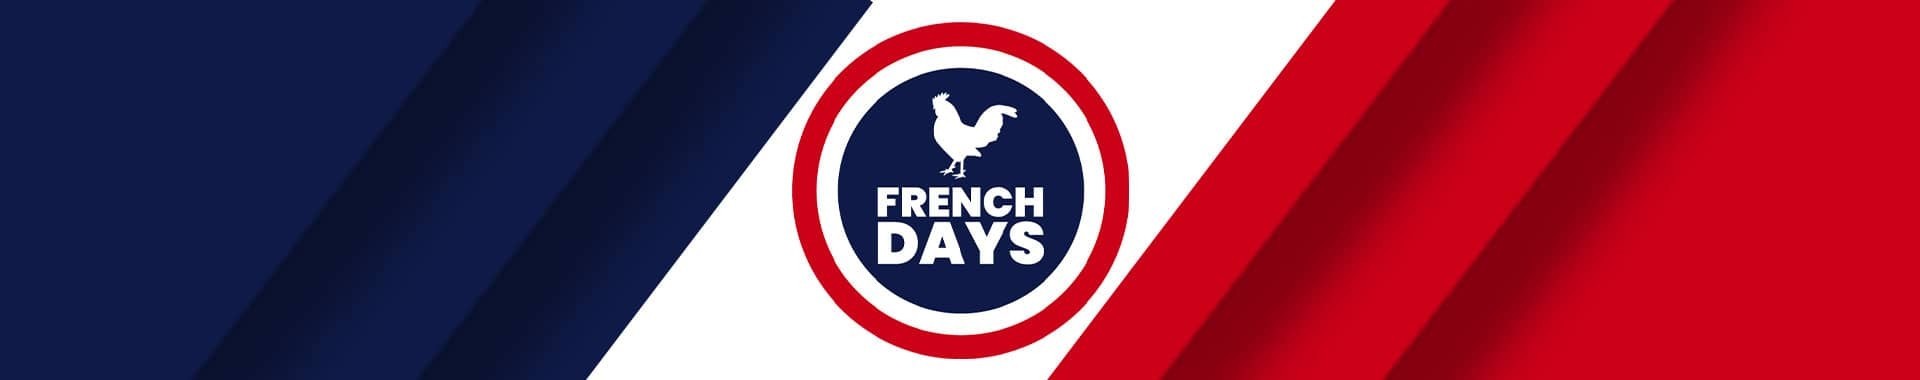 French Days Comptoir Nautique: Pilotos automáticos a precios rebajados